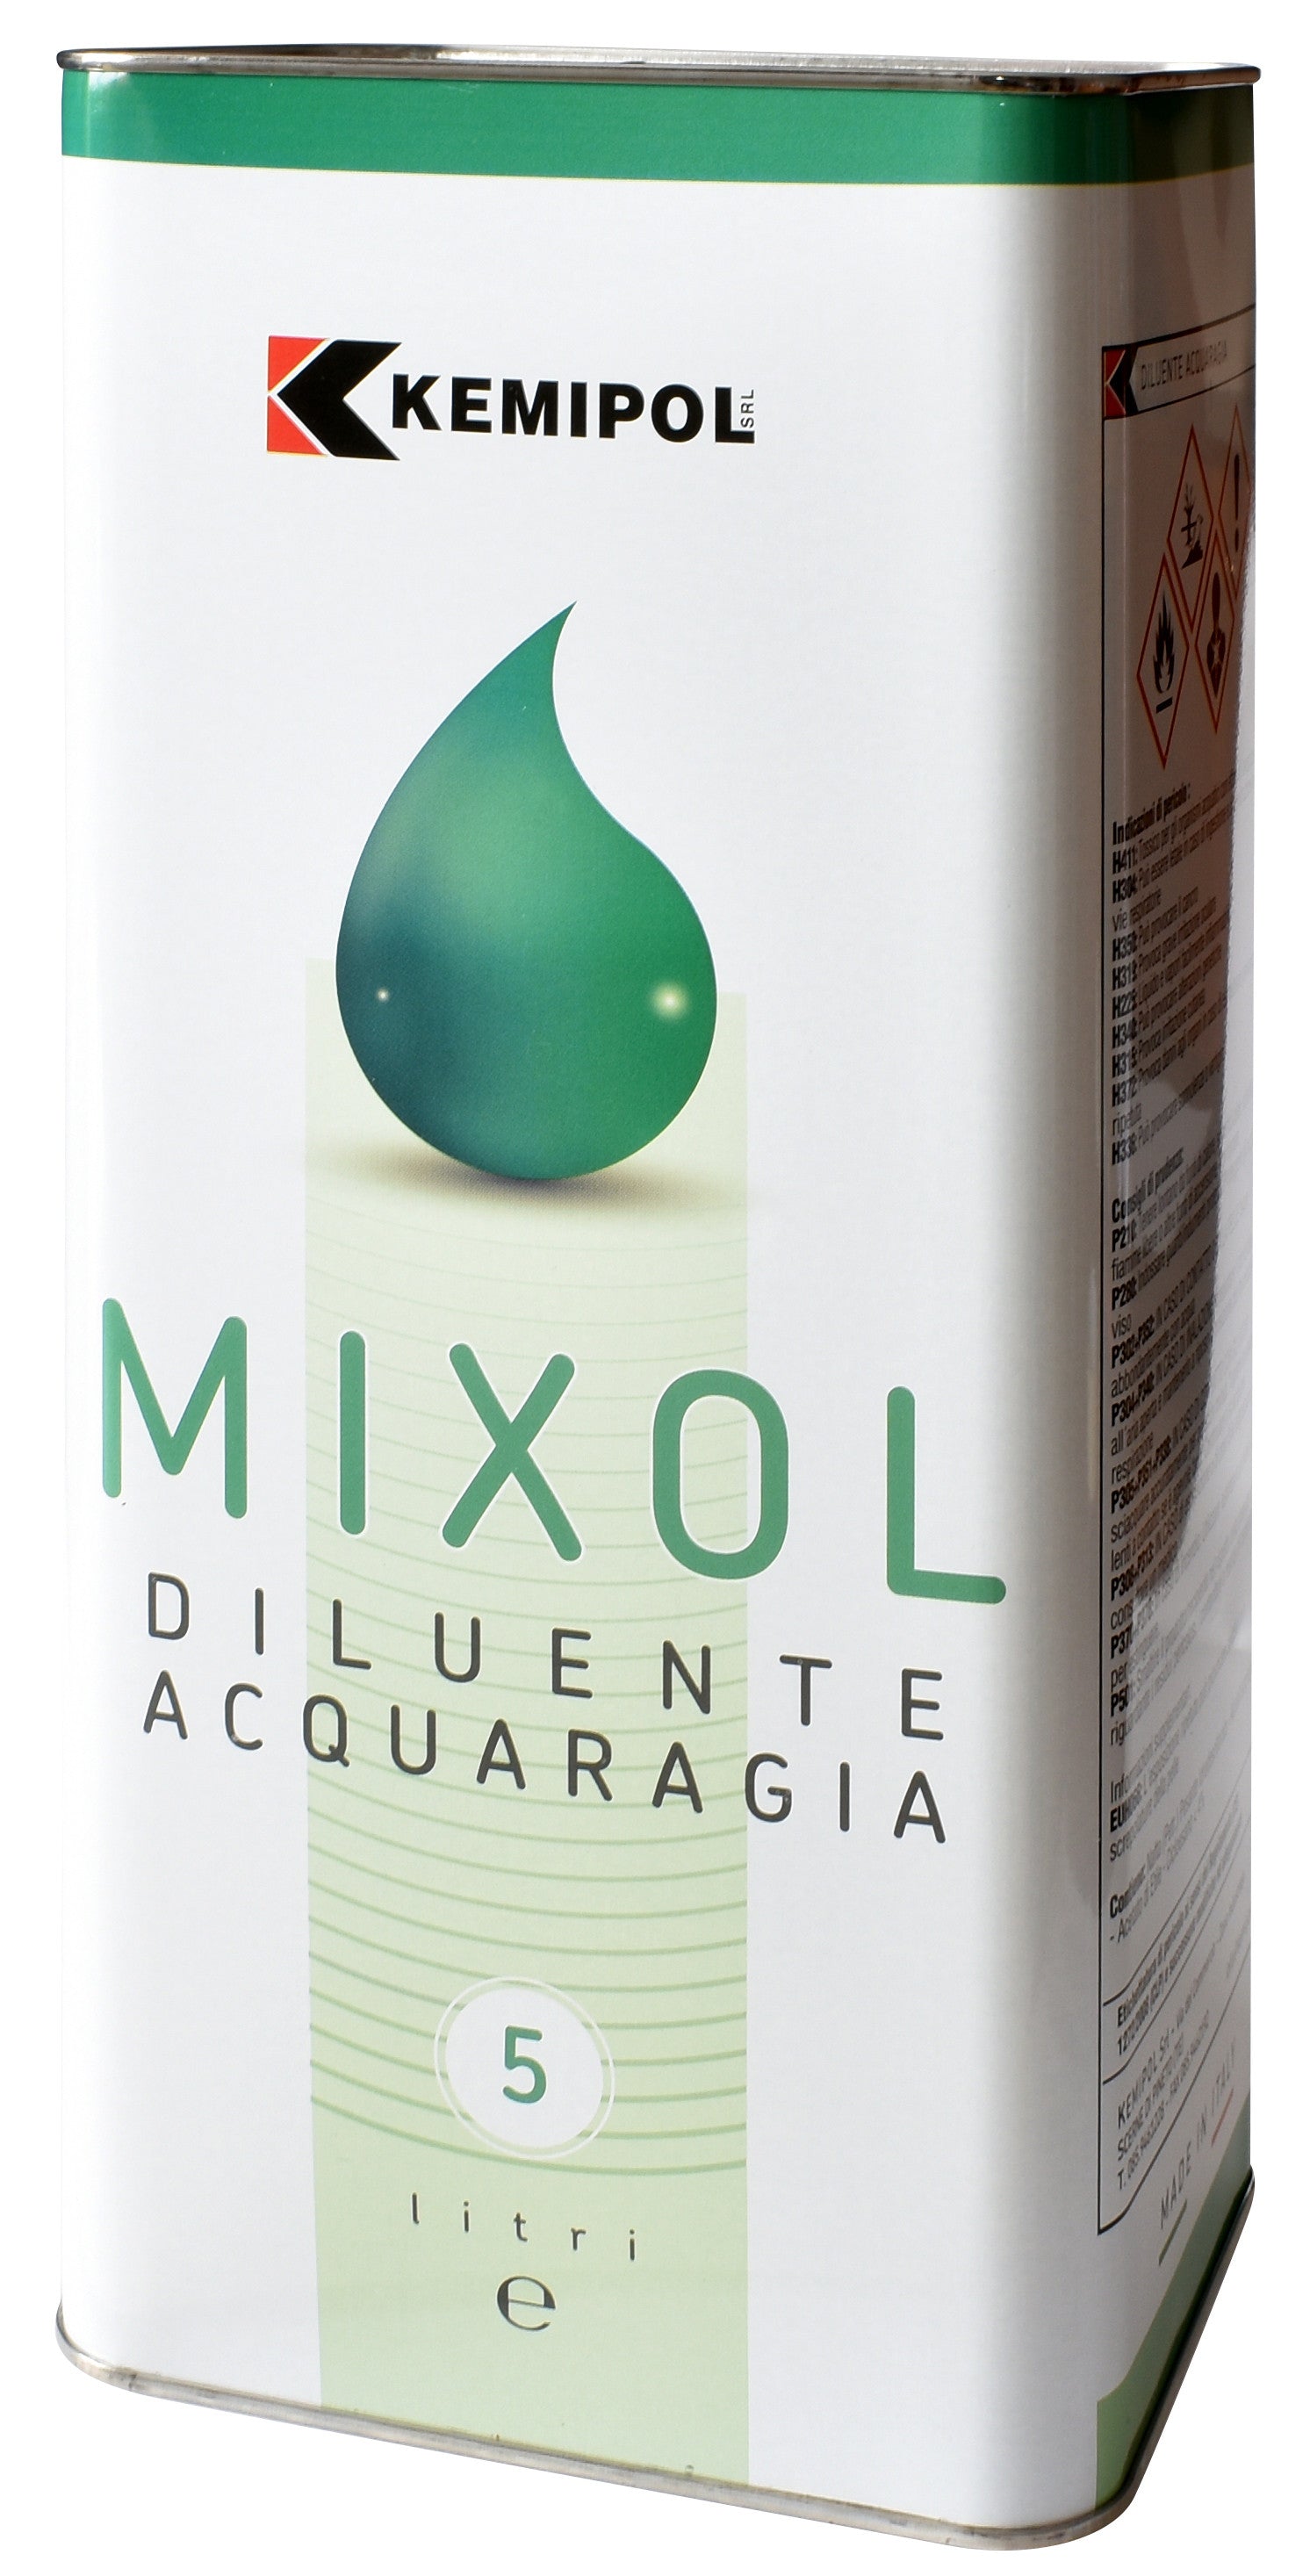 Acquaragia mixol lt. 5